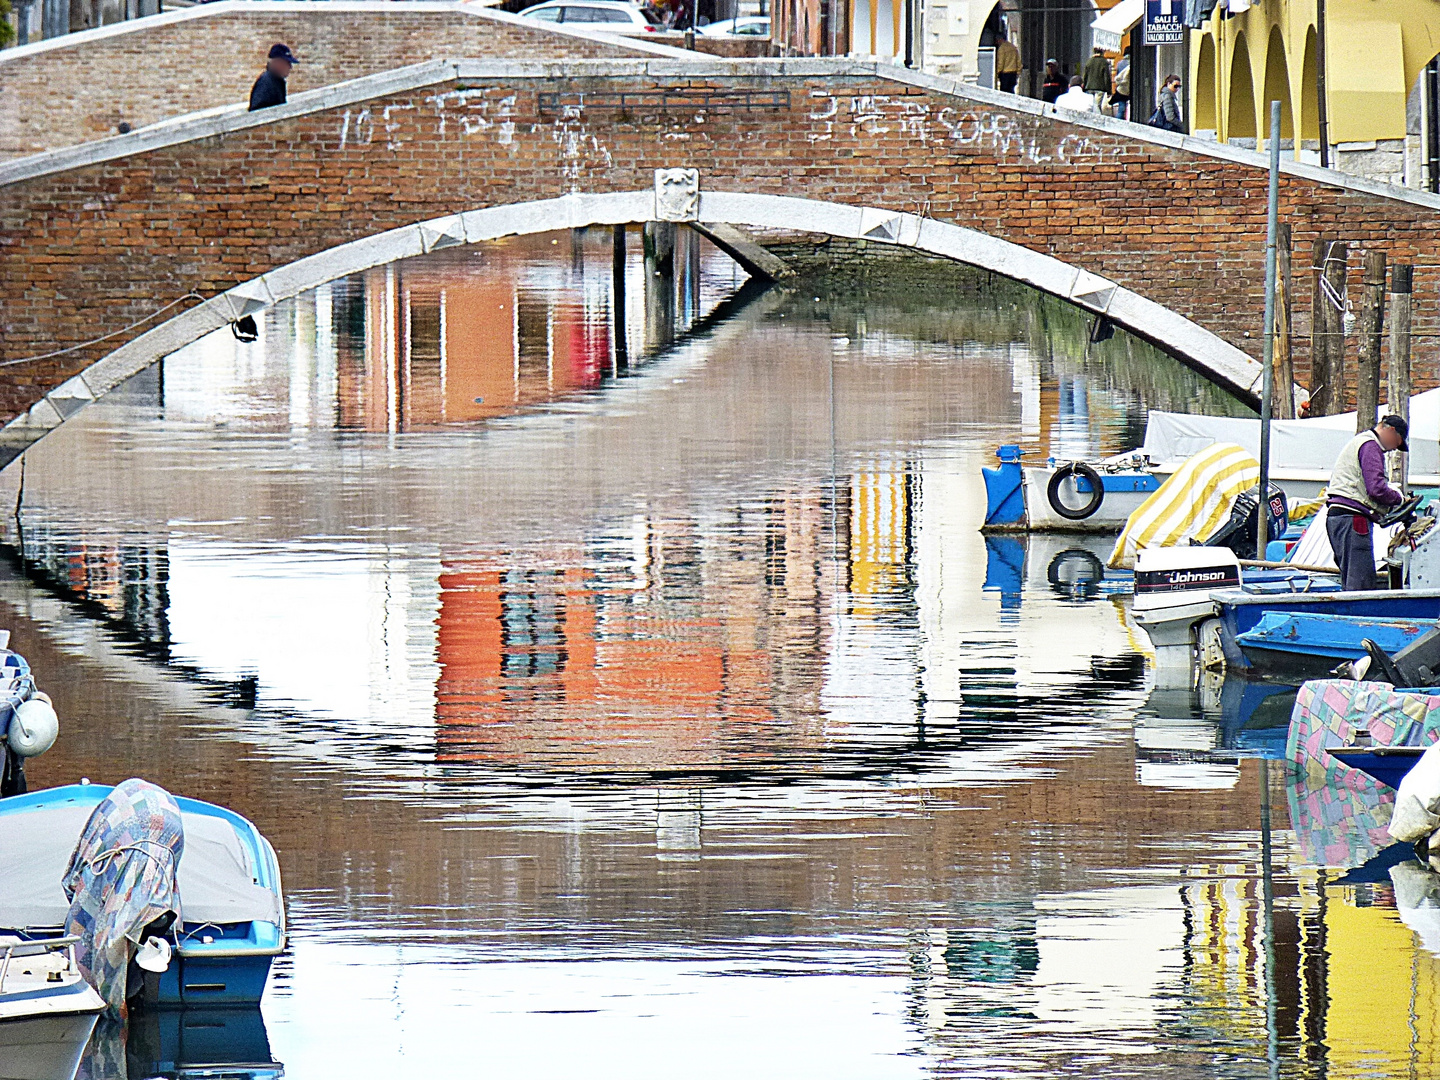 Spiegelung auf einem Kanal in Italien